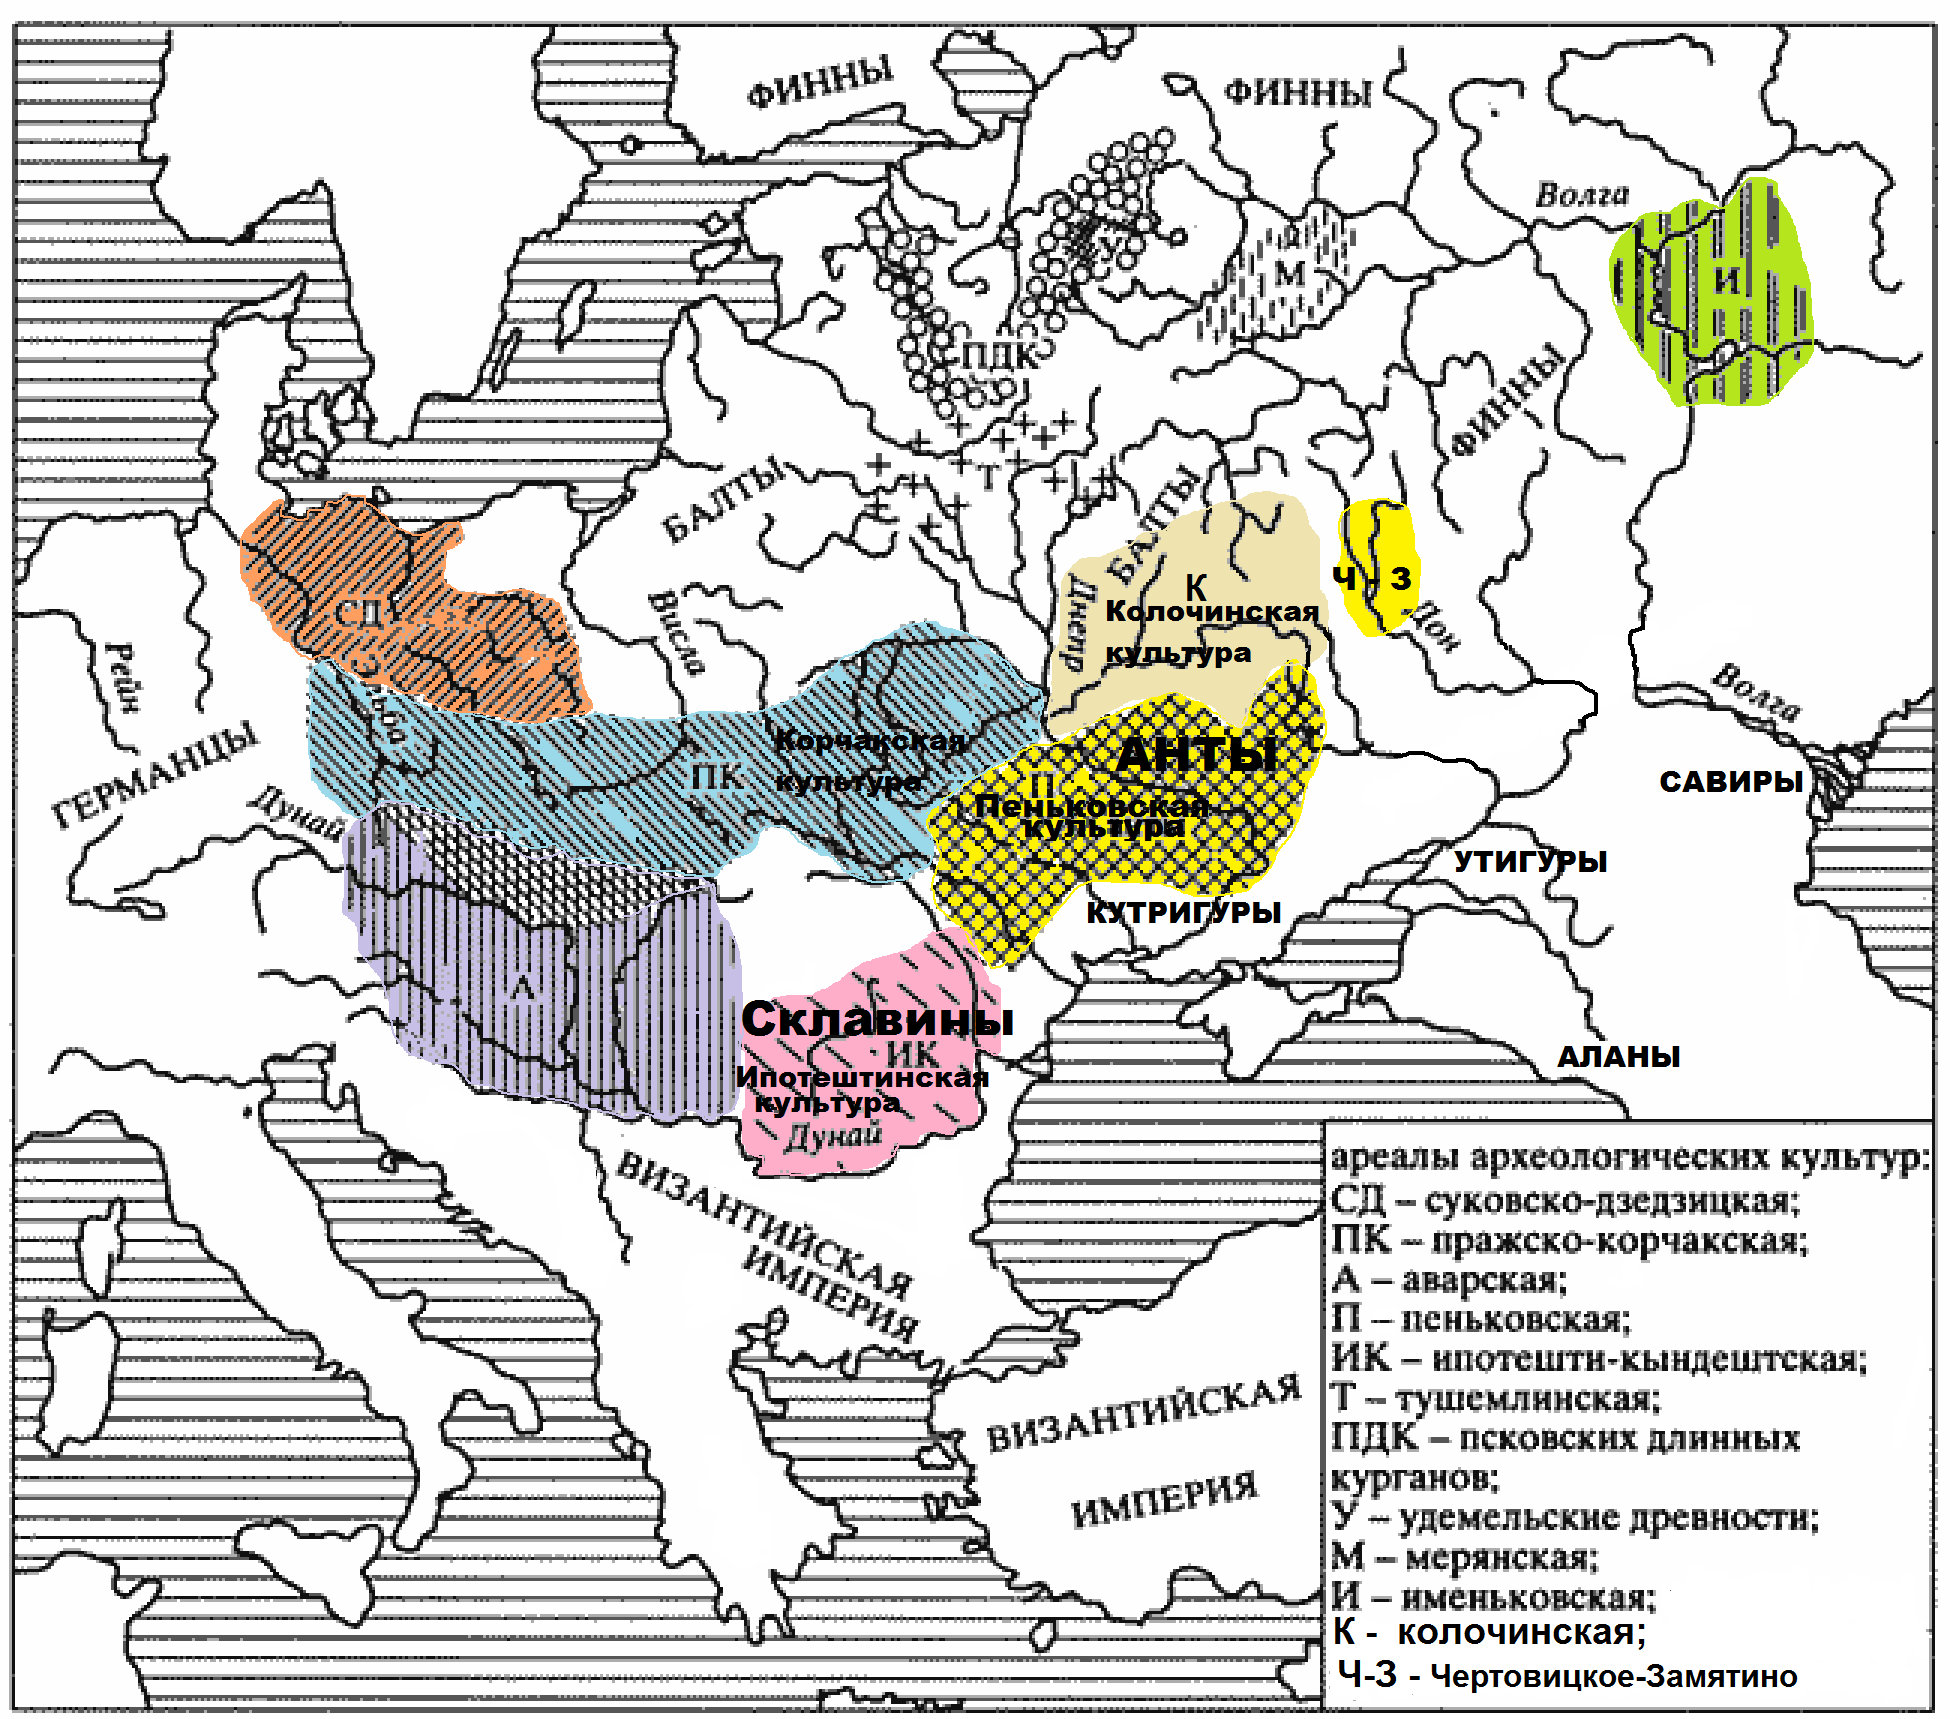 Аварская (аваро-славянская) культура на карте В. Седова